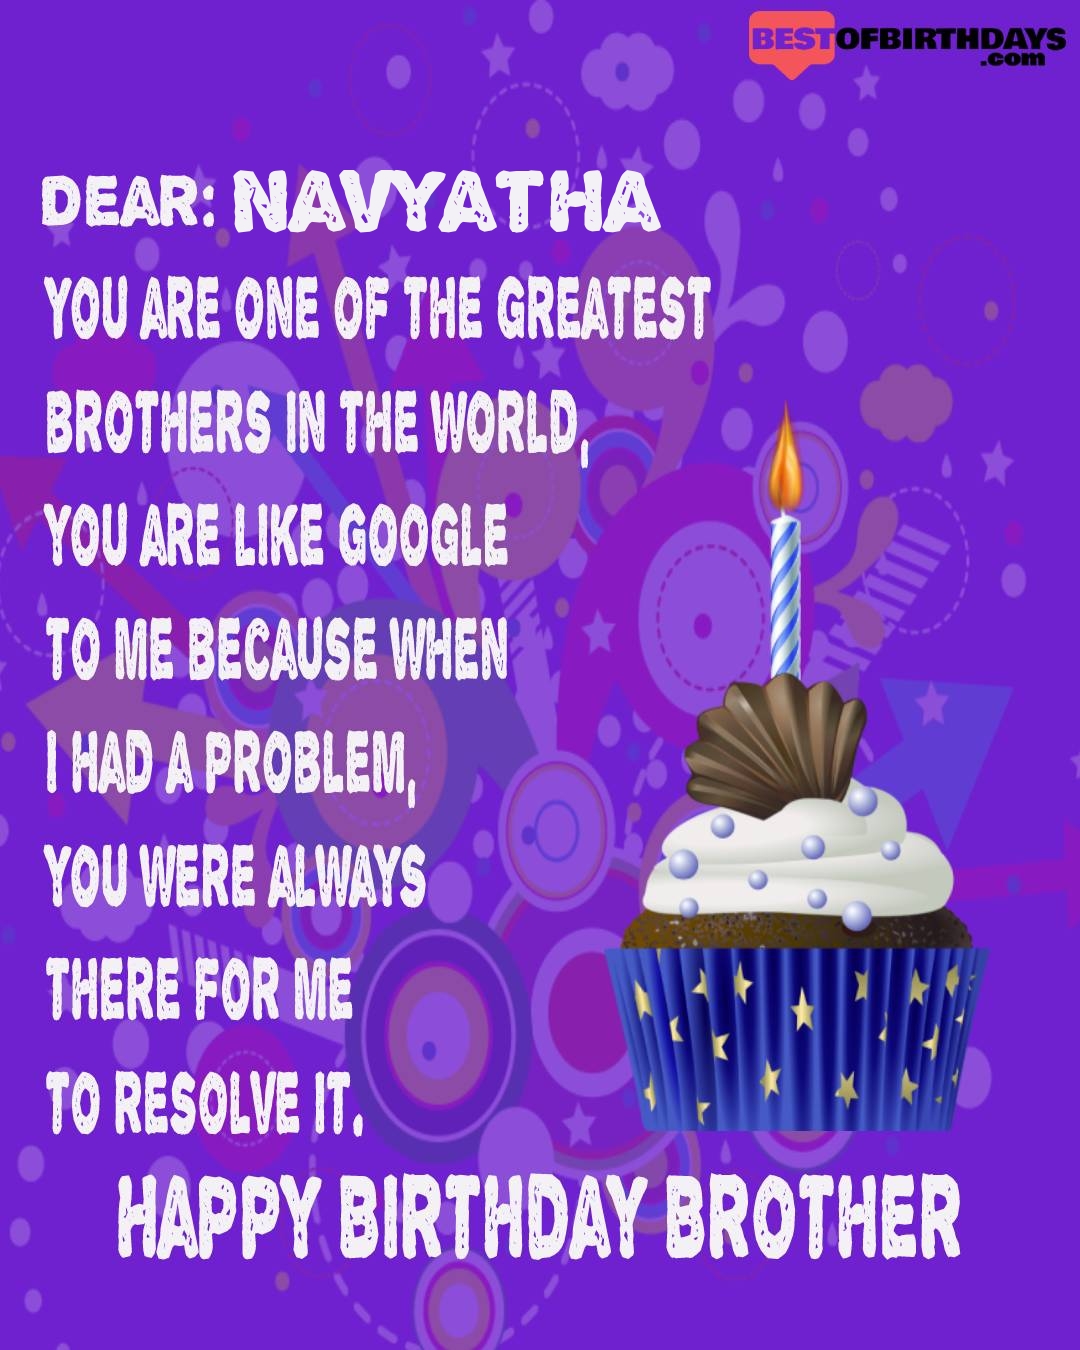 Happy birthday navyatha bhai brother bro